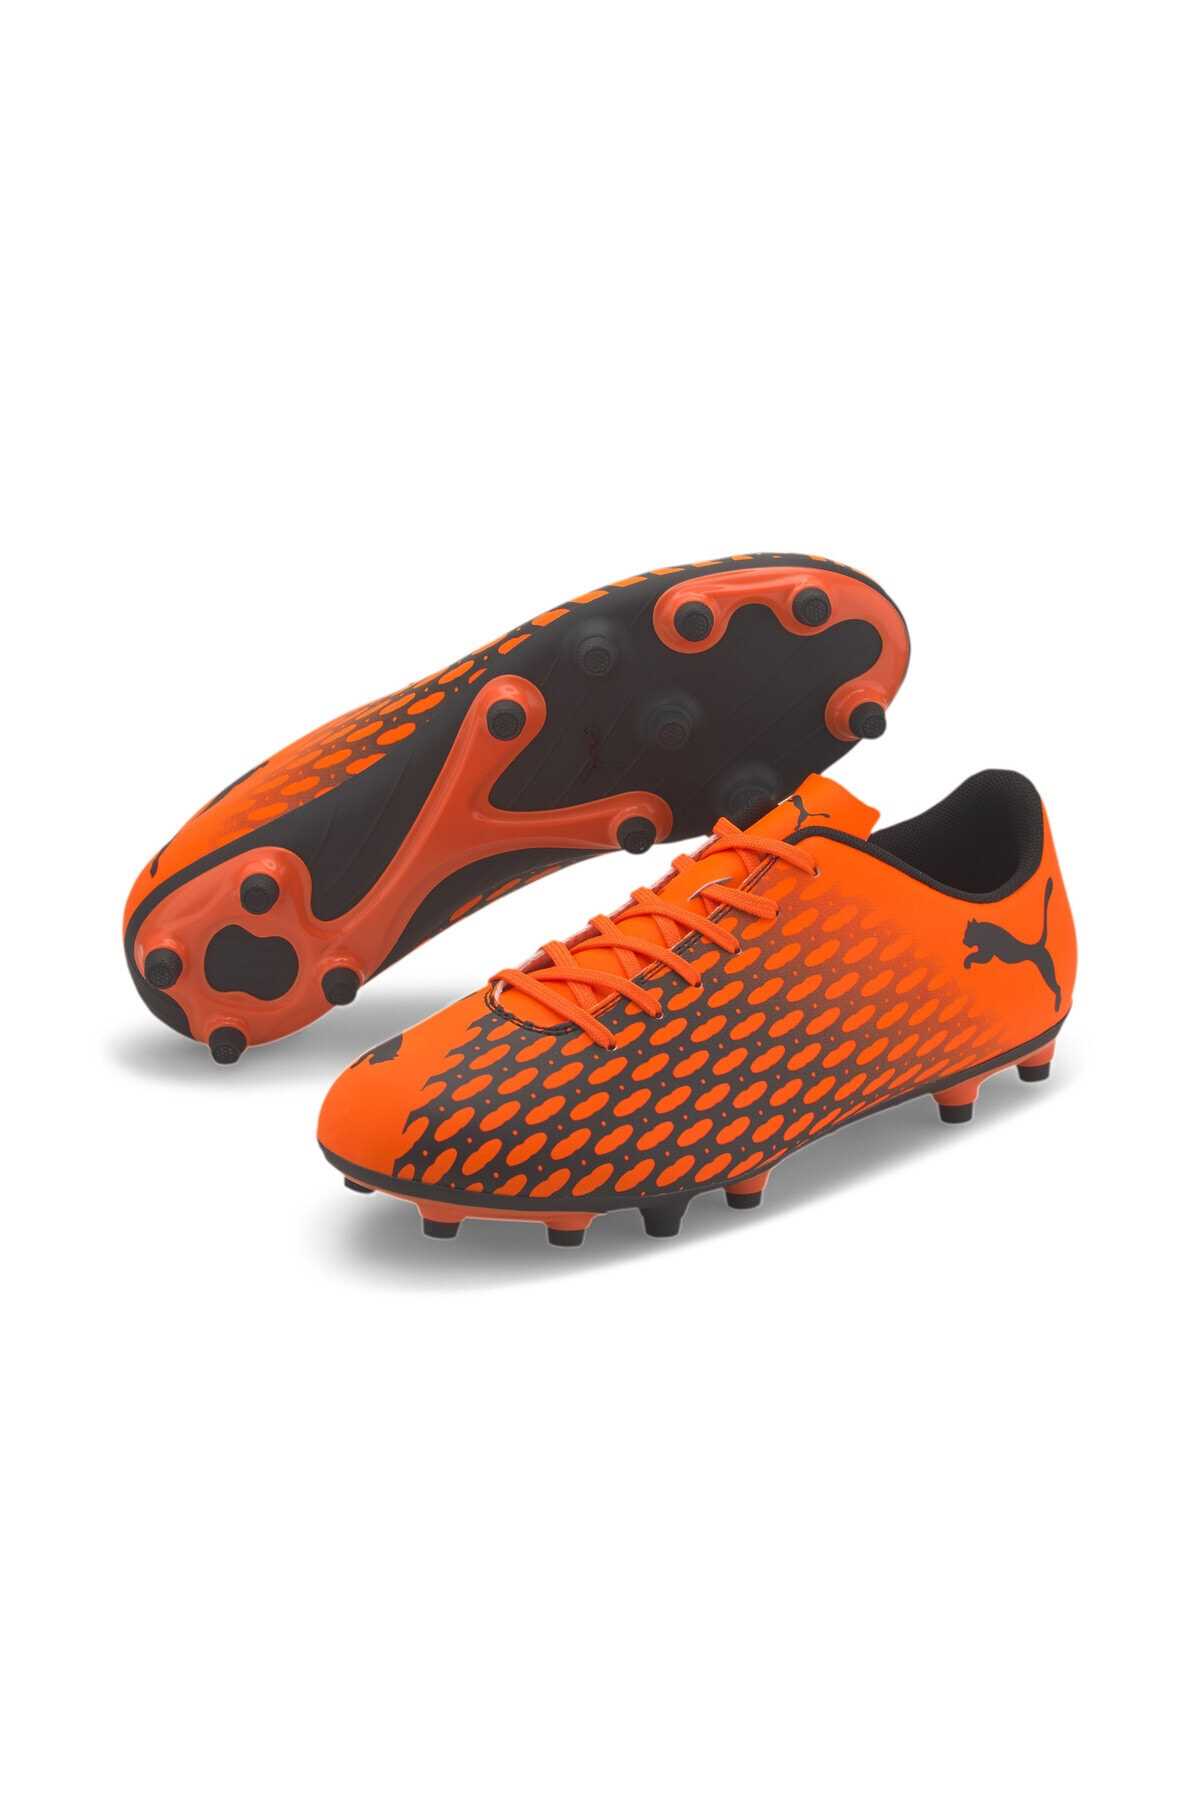 کفش فوتبال مردانه قیمت برند پوما رنگ نارنجی کد ty58084313